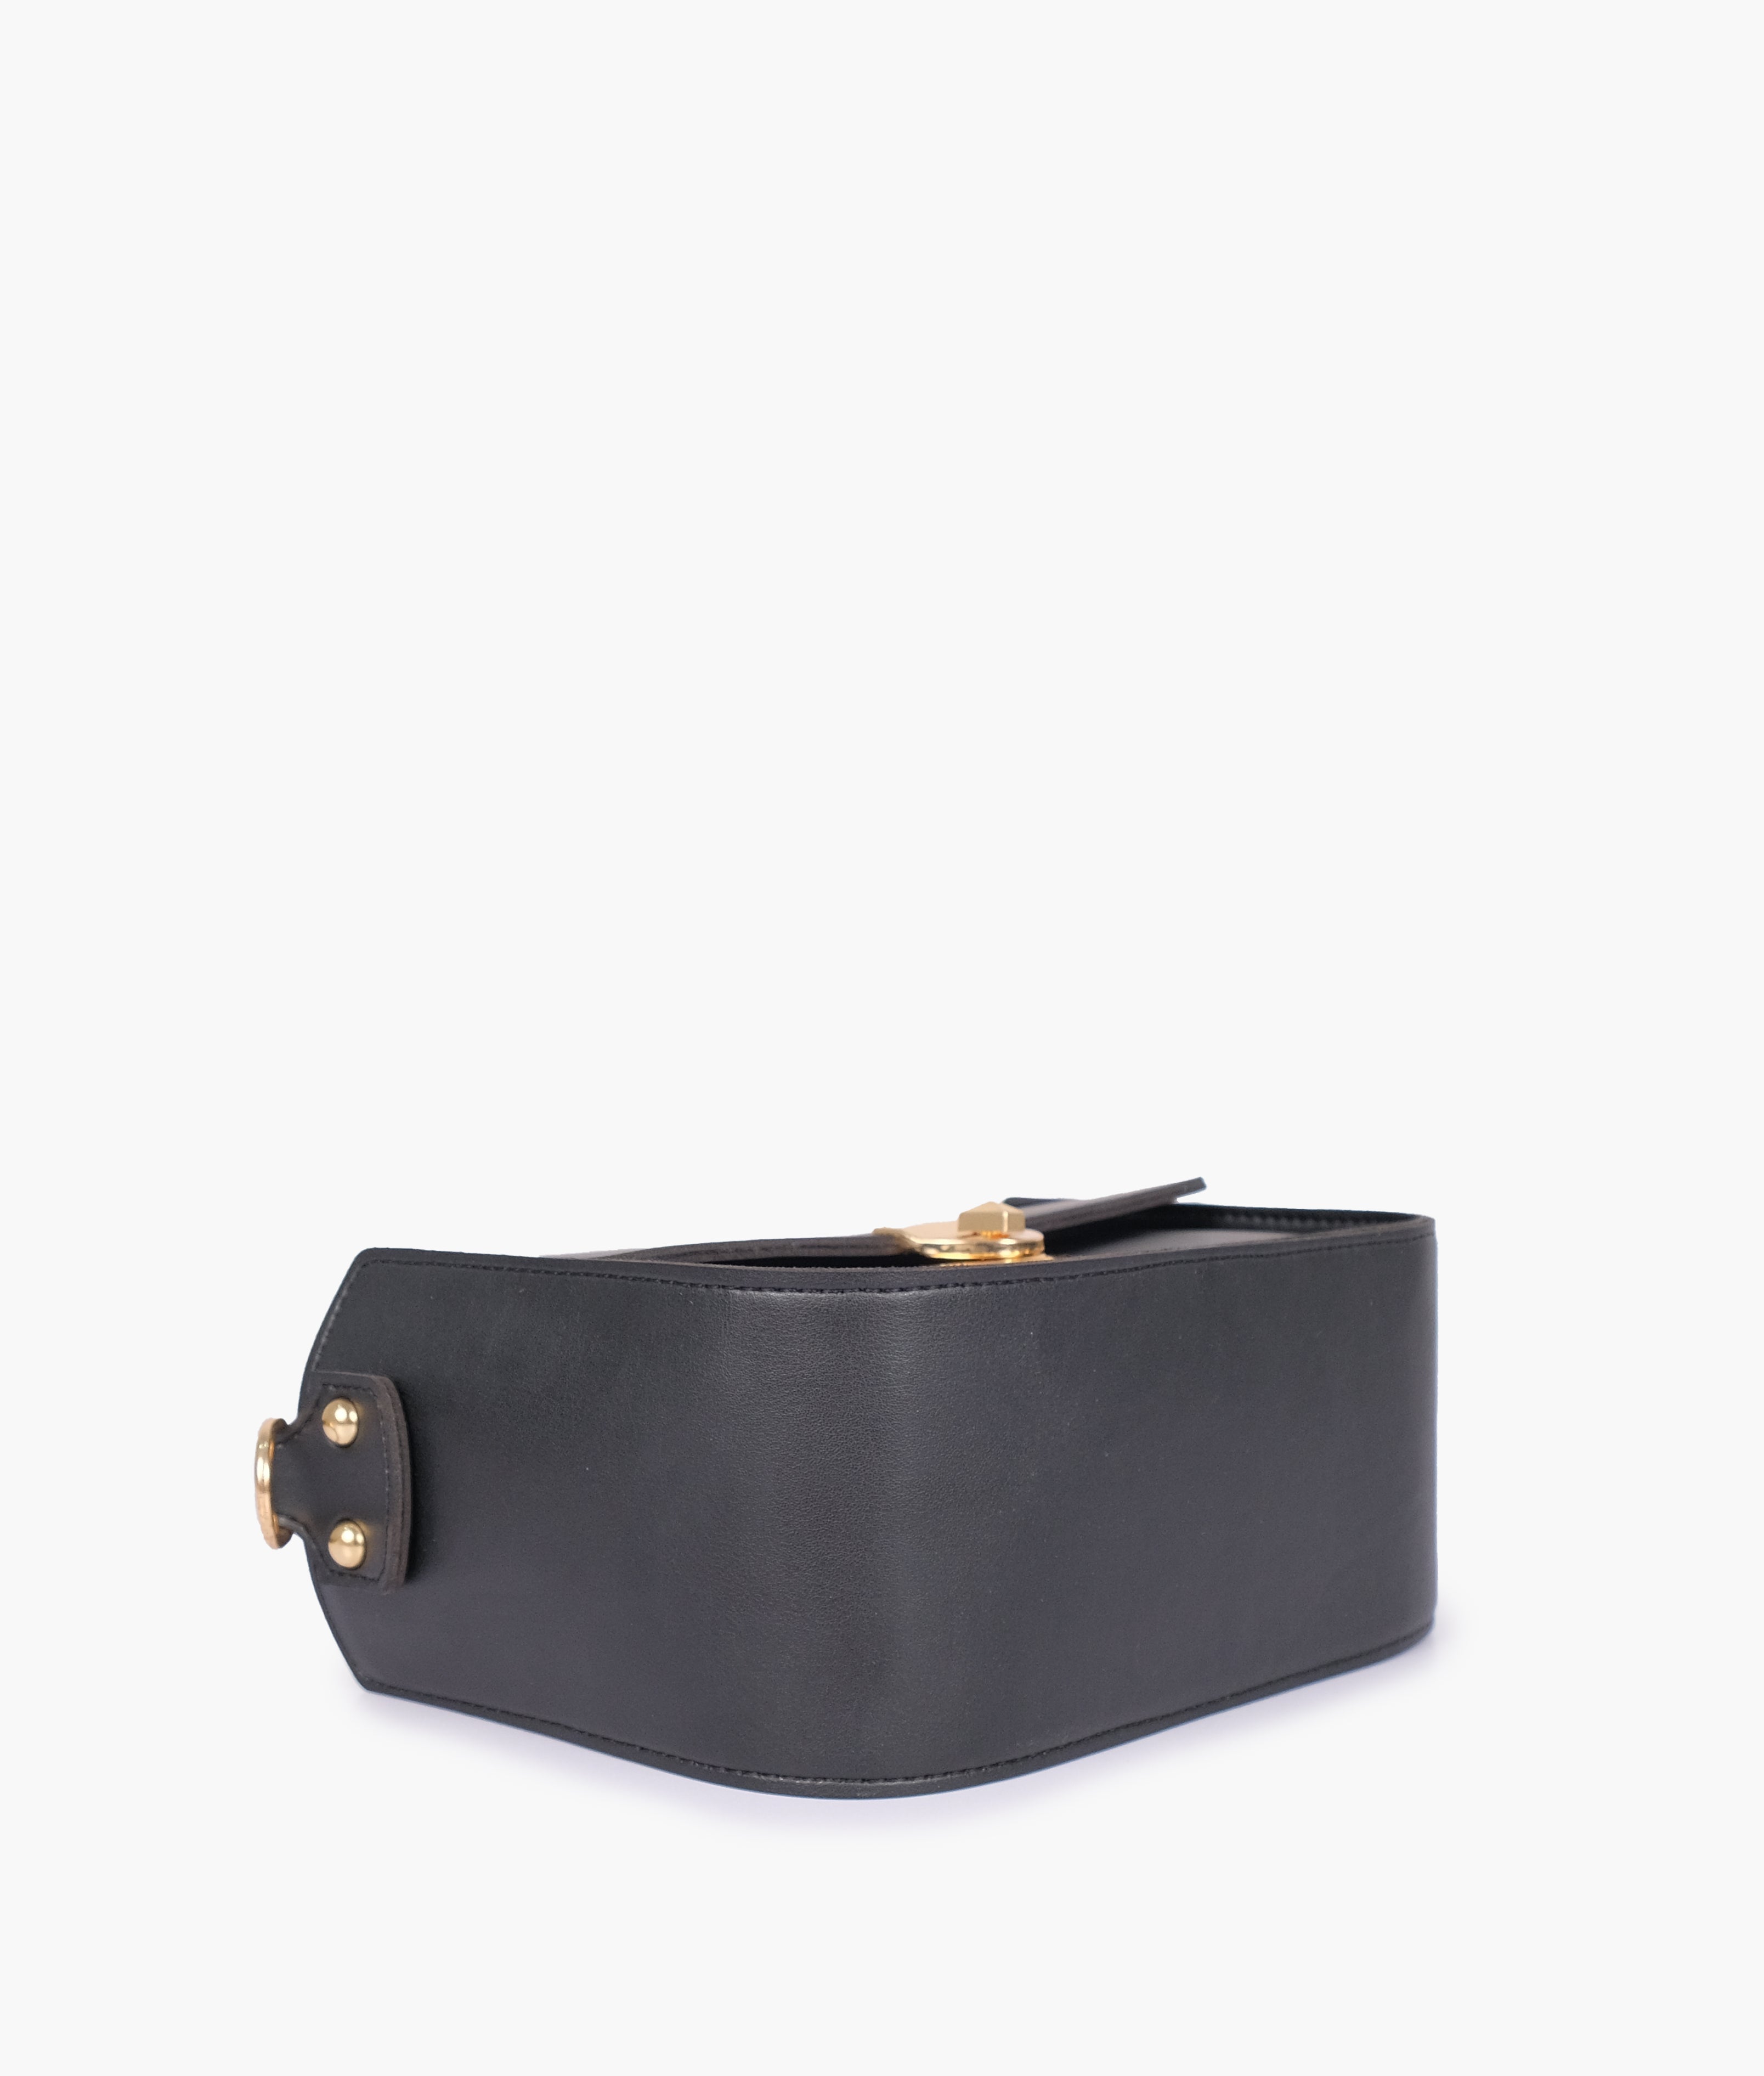 Black Handbag For Women 606